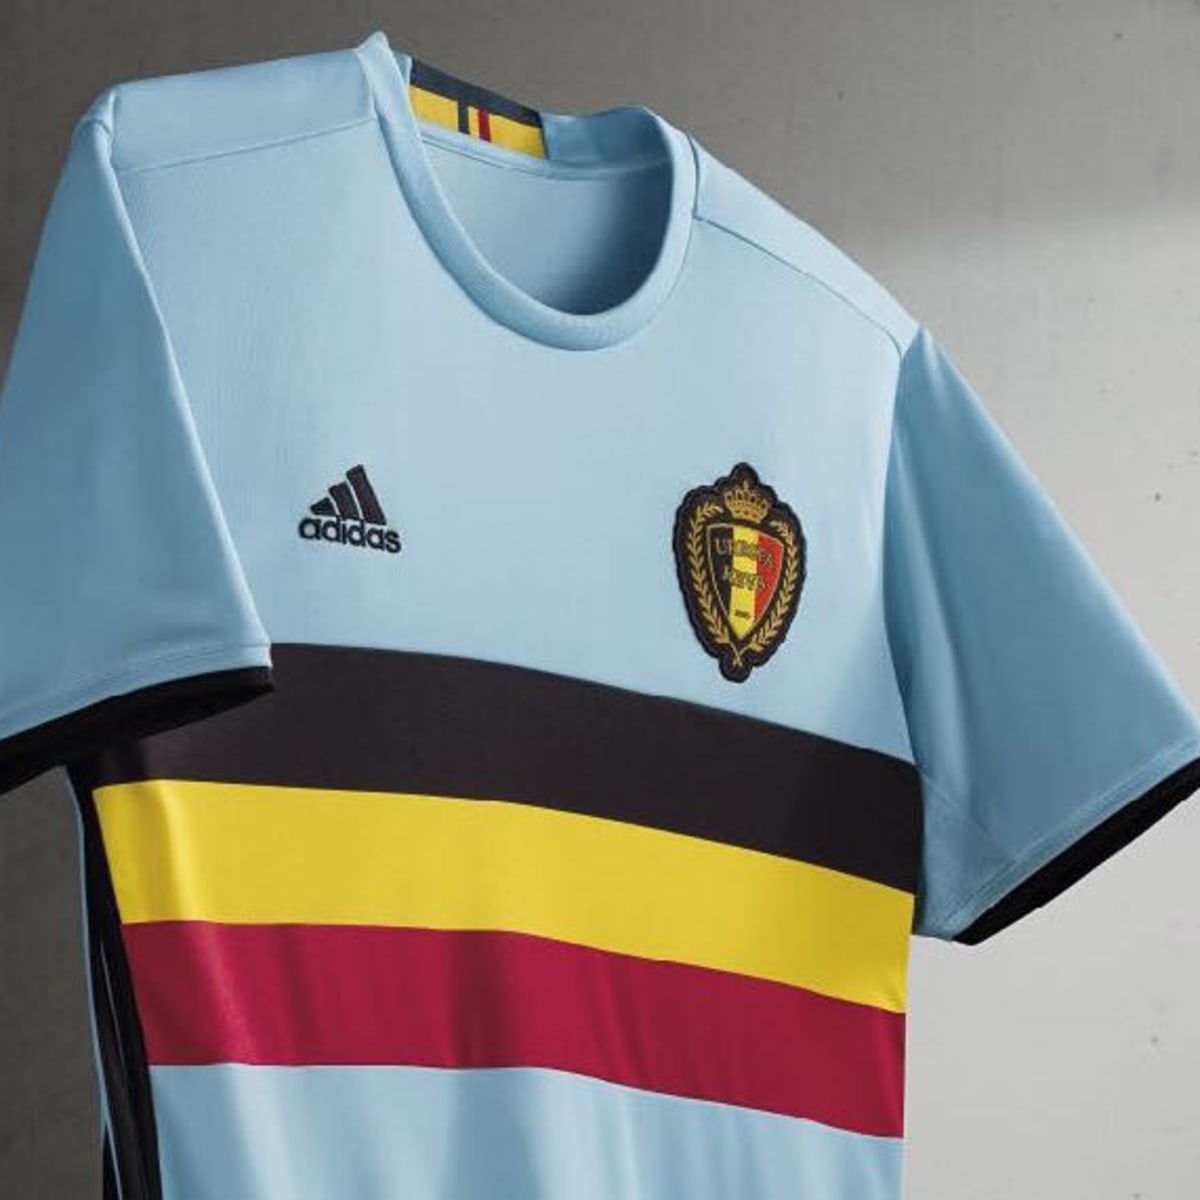 belgium euro 2016 kit